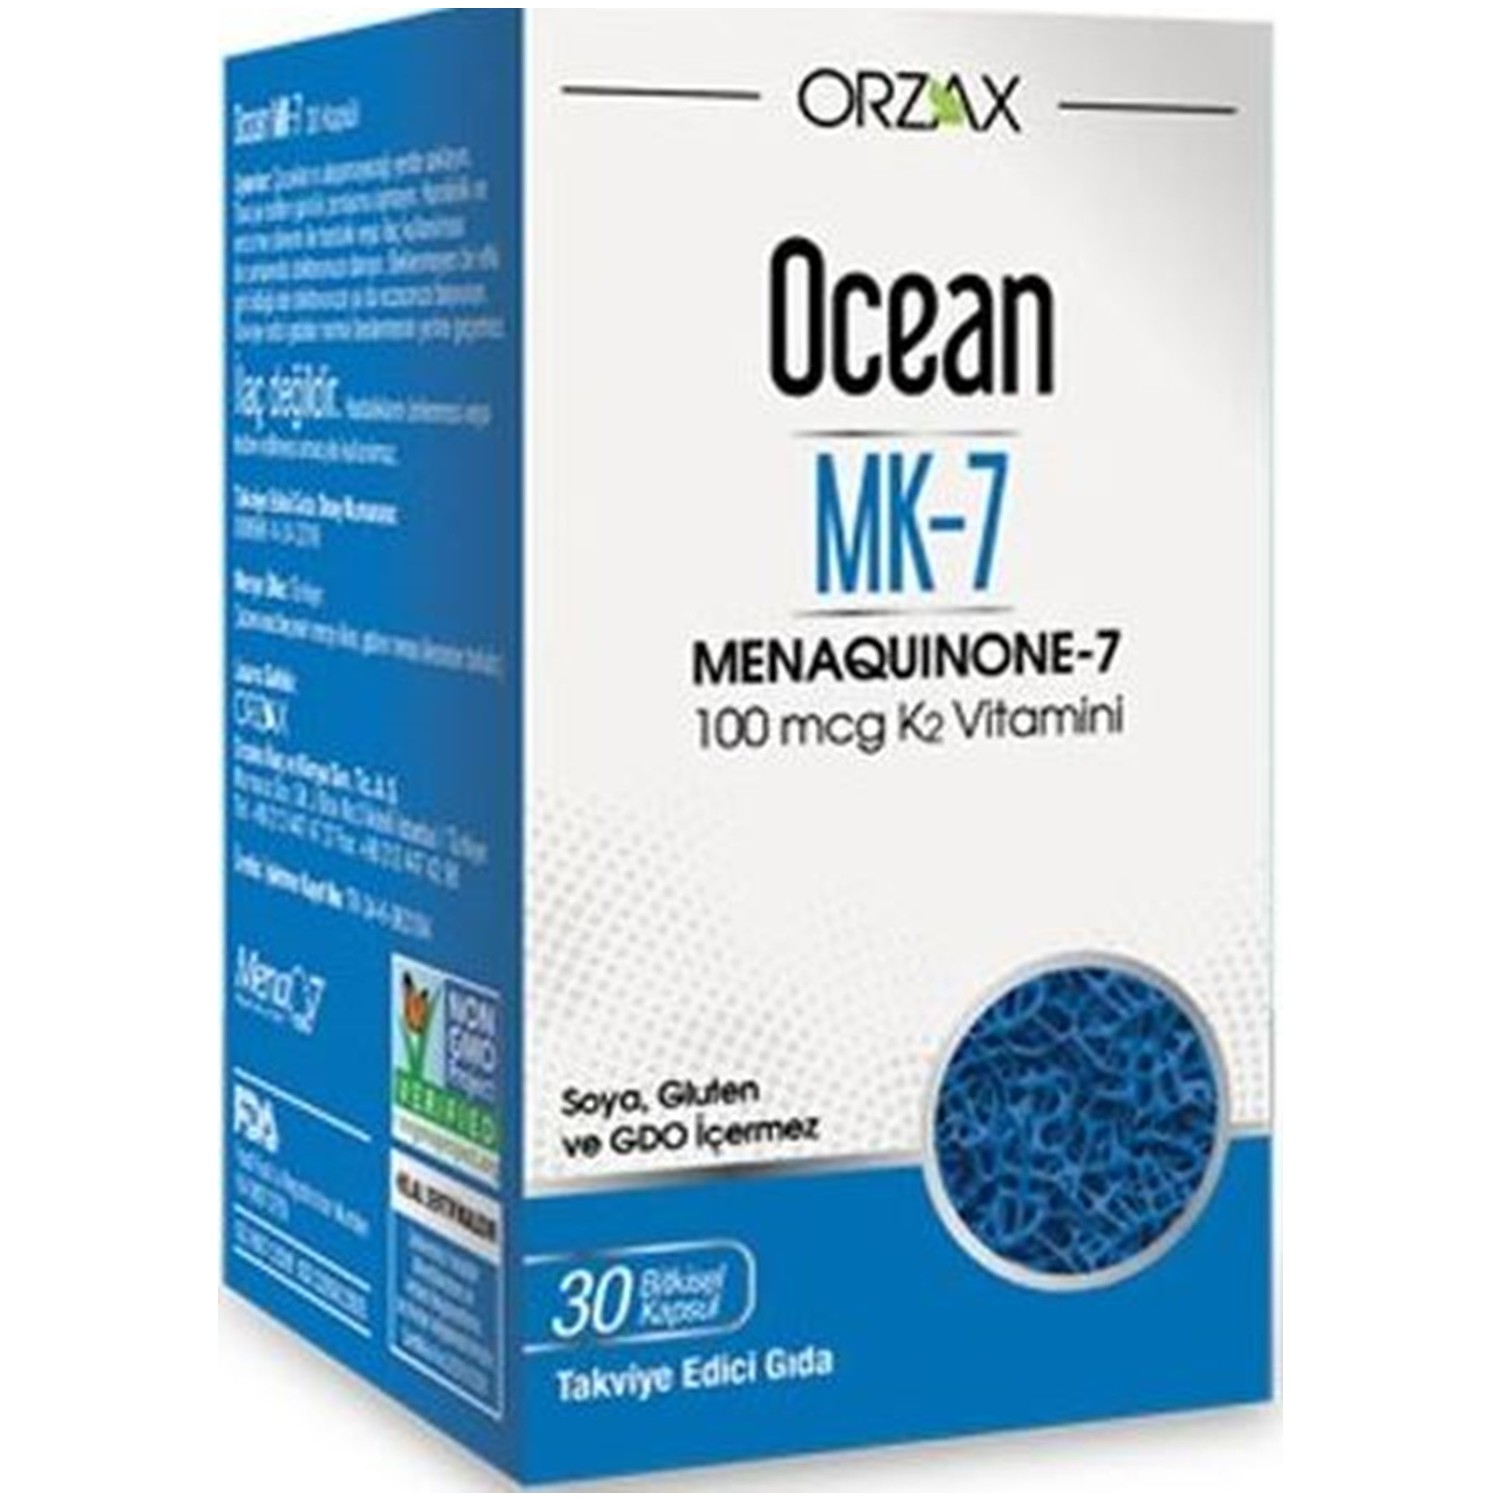 Пищевая добавка Orzax Ocean Mk-7 Vitamin К2 100 мкг, 30 капсул now foods mk 7 витамин k2 100 мкг 120 вегетарианских капсул